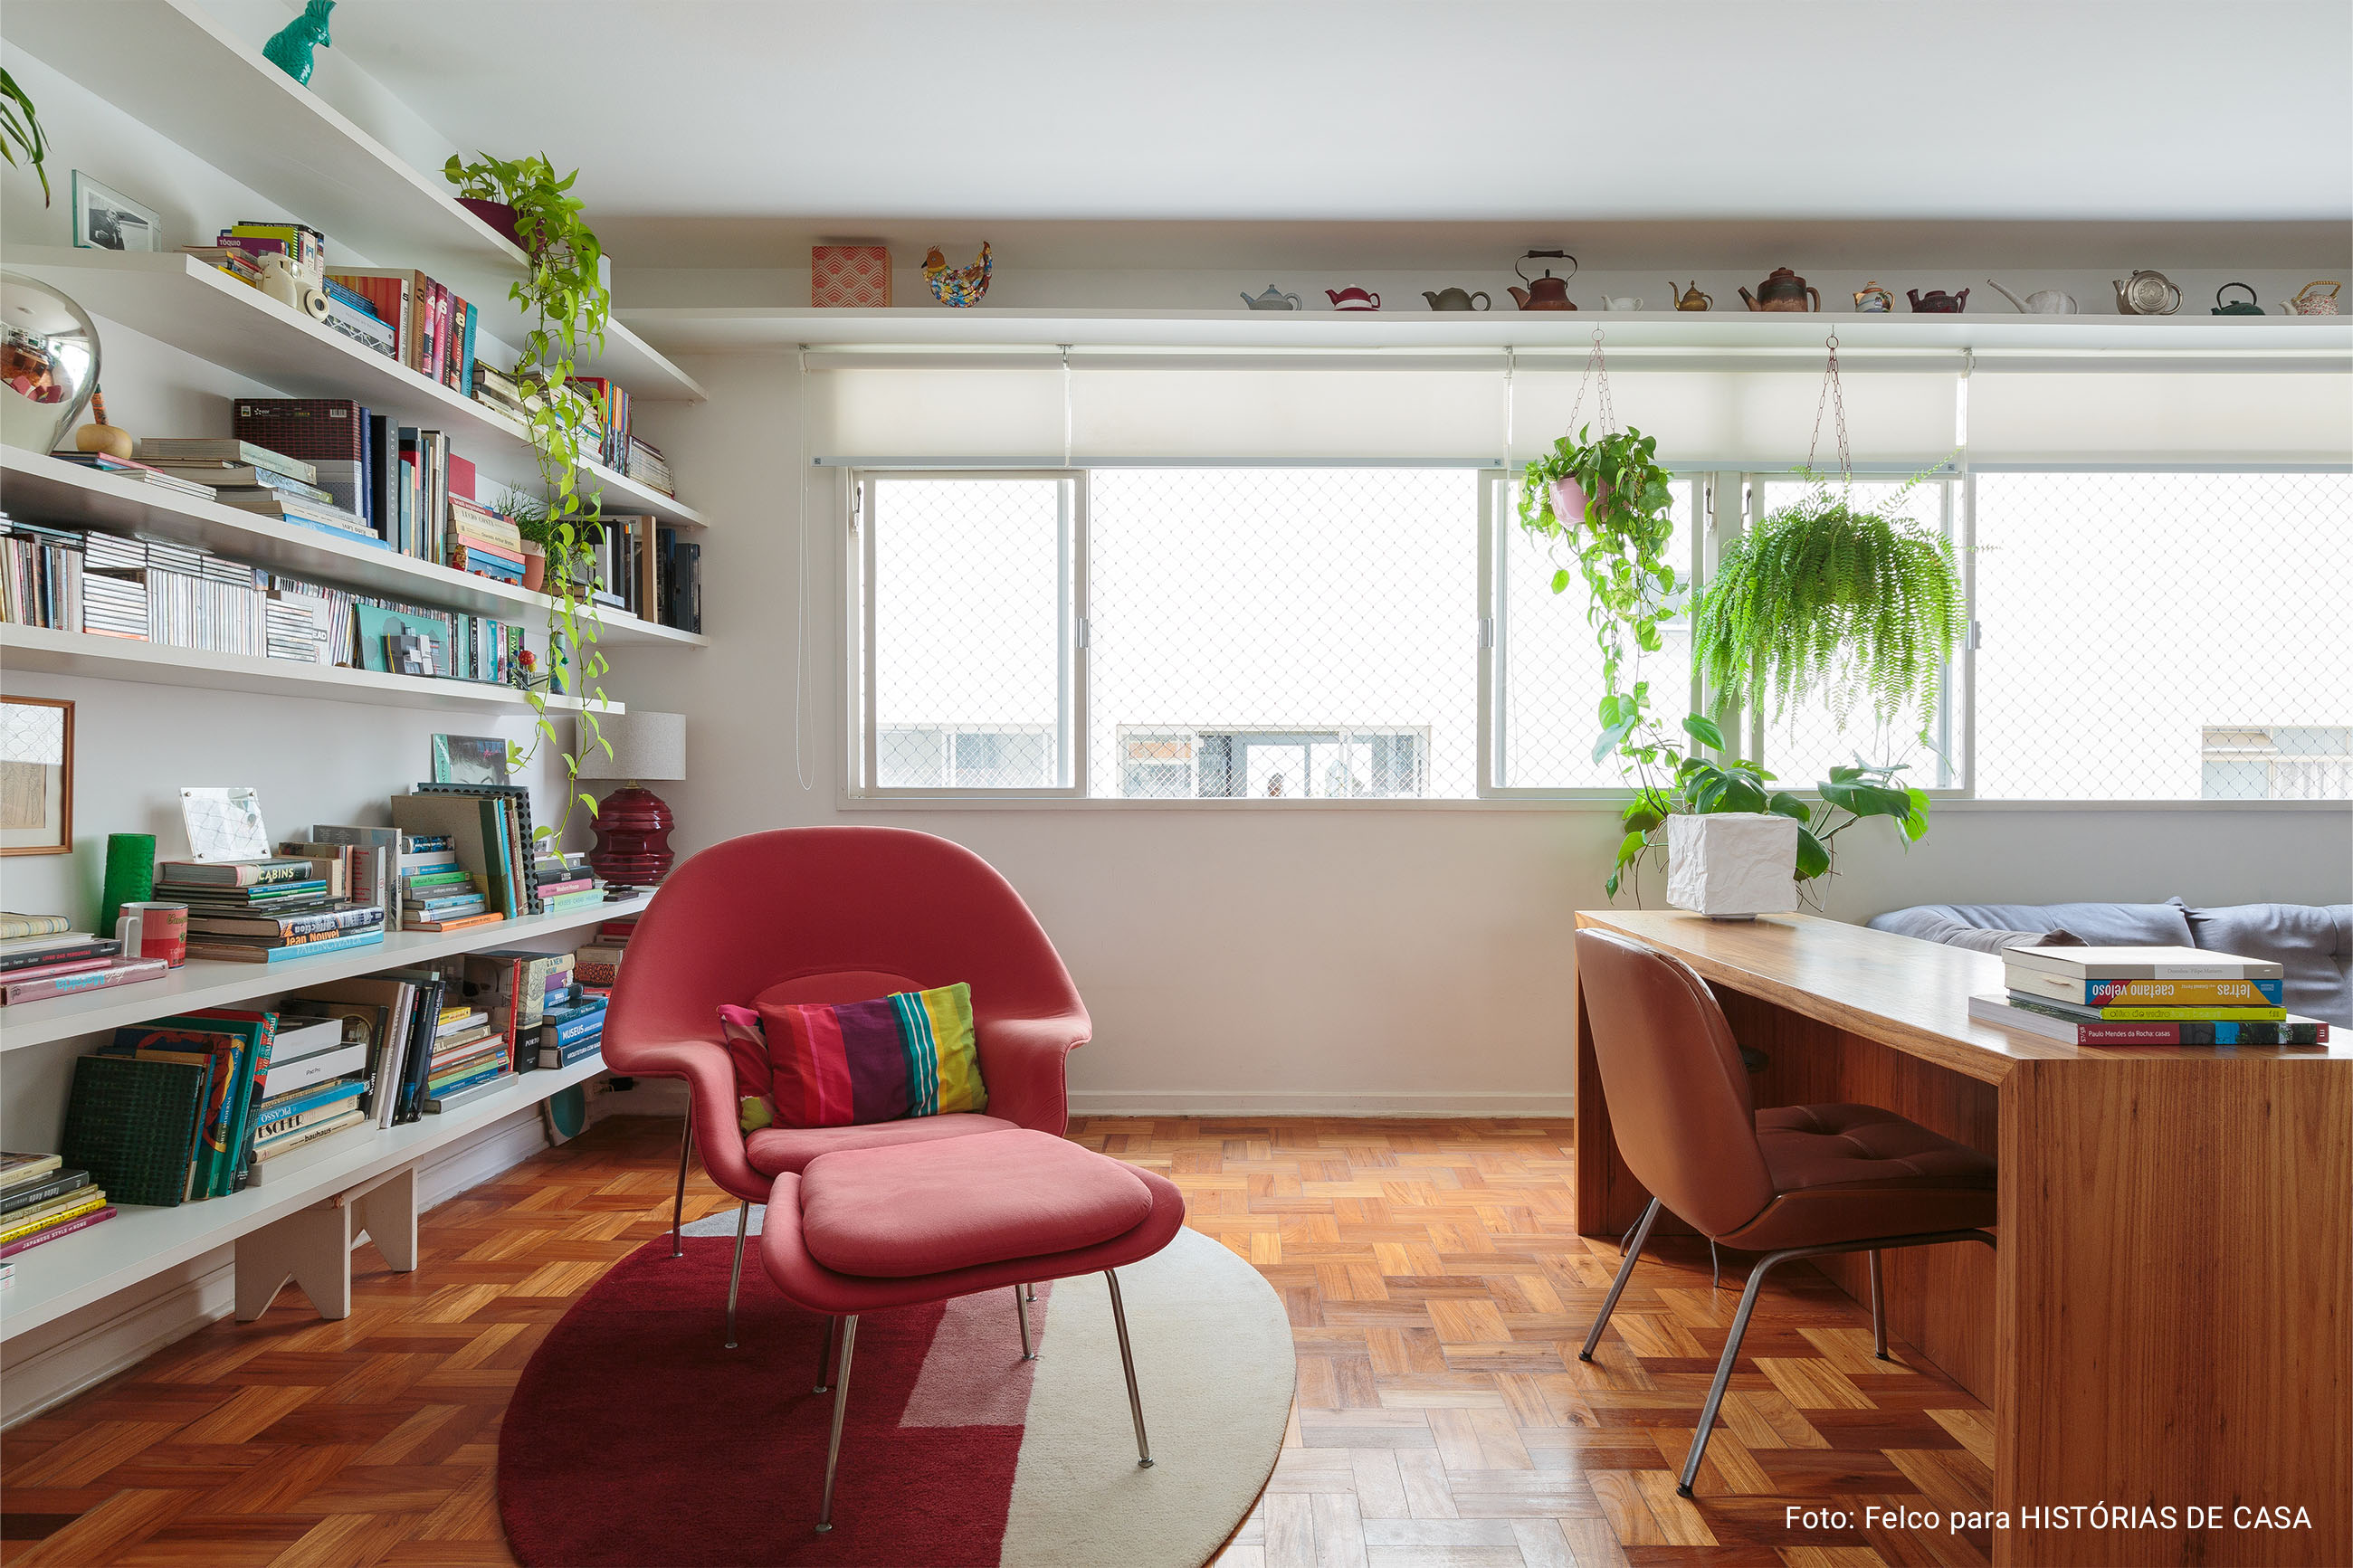 Apartamento com piso de taco, cozinha colorida, móveis vintage e eletrodomésticos da Electrolux